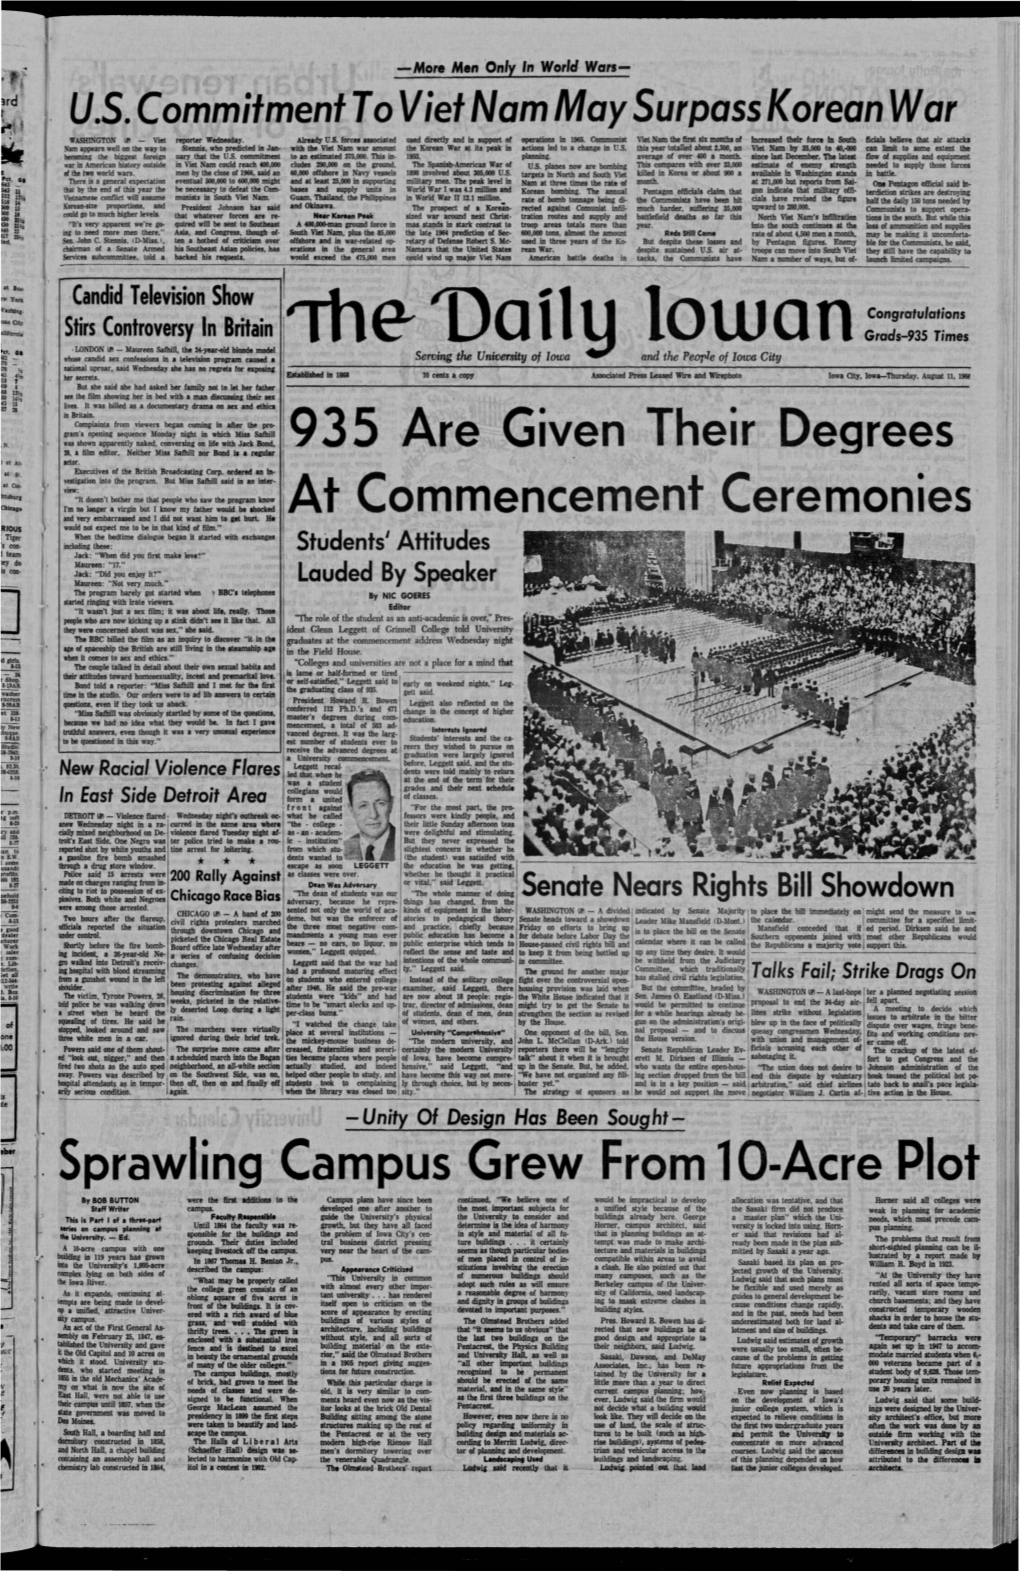 Daily Iowan (Iowa City, Iowa), 1966-08-11